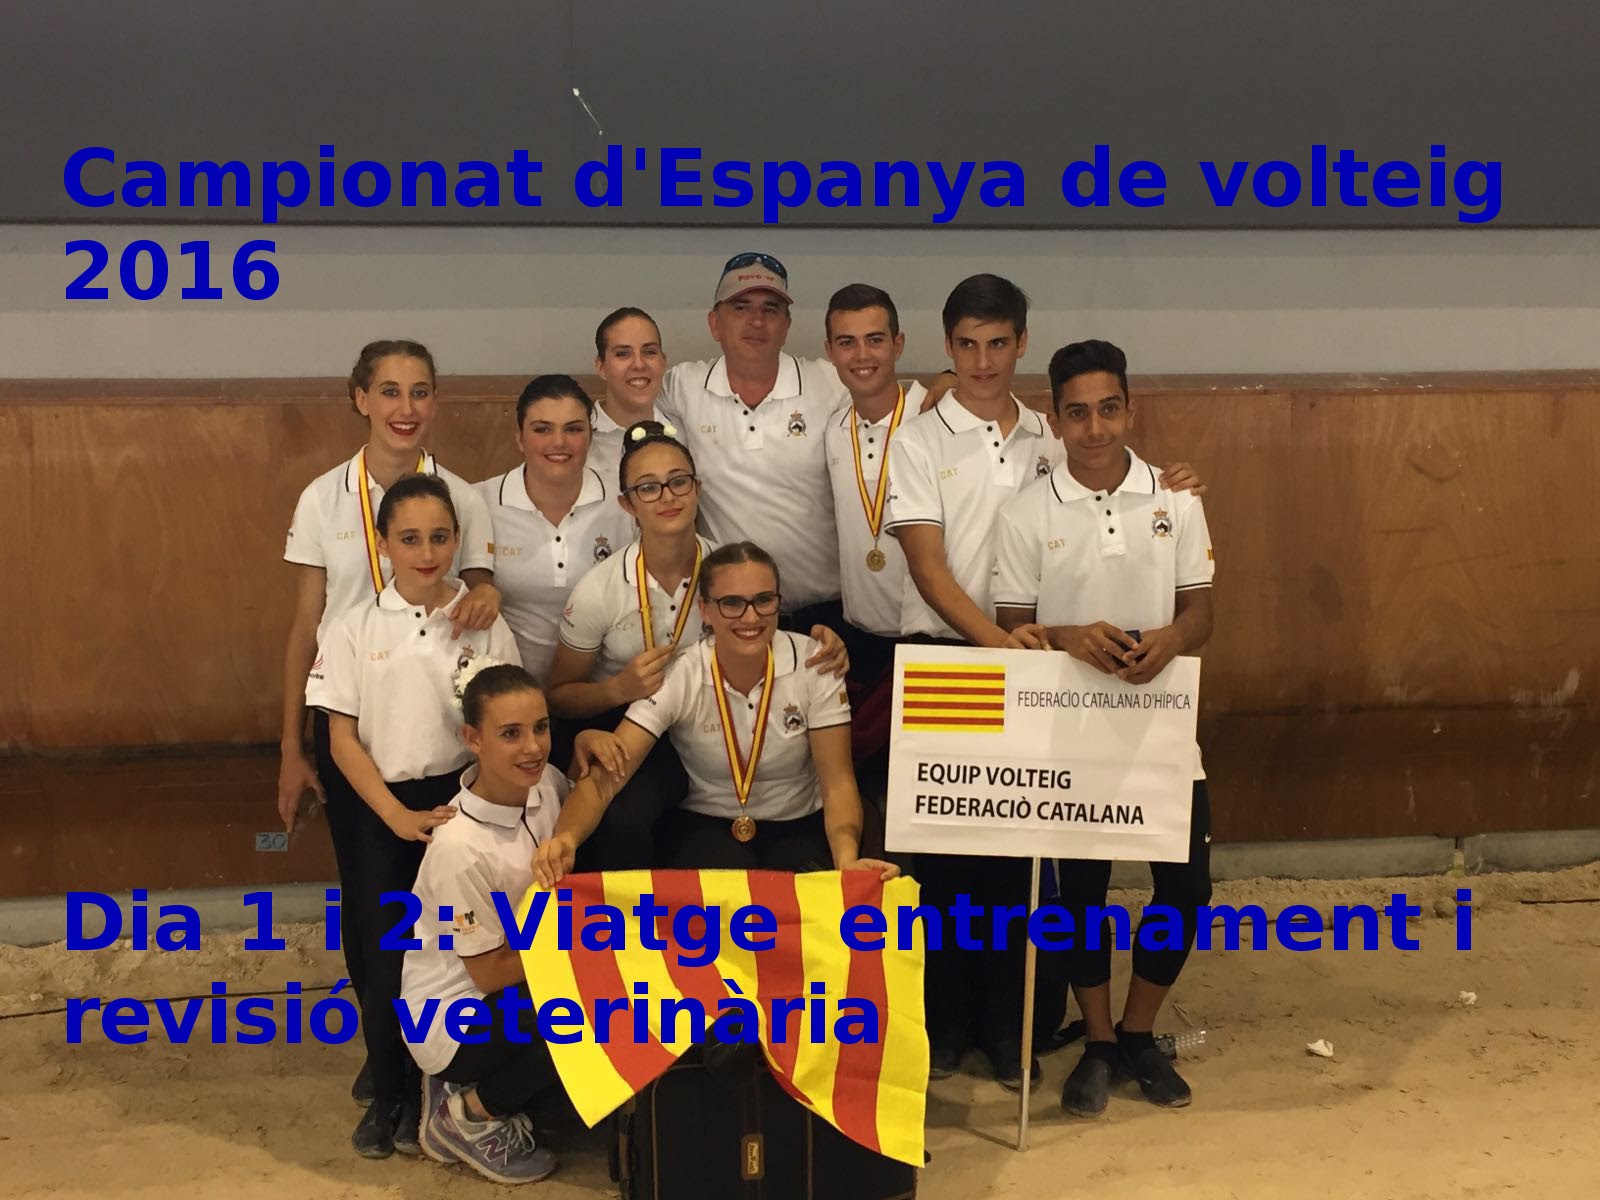 CAMPIONAT D'ESPANYA DE VOLTEIG 2016 | dies 1 i 2 : viatge, entrenaments i revisió veterinaria de Wilvin